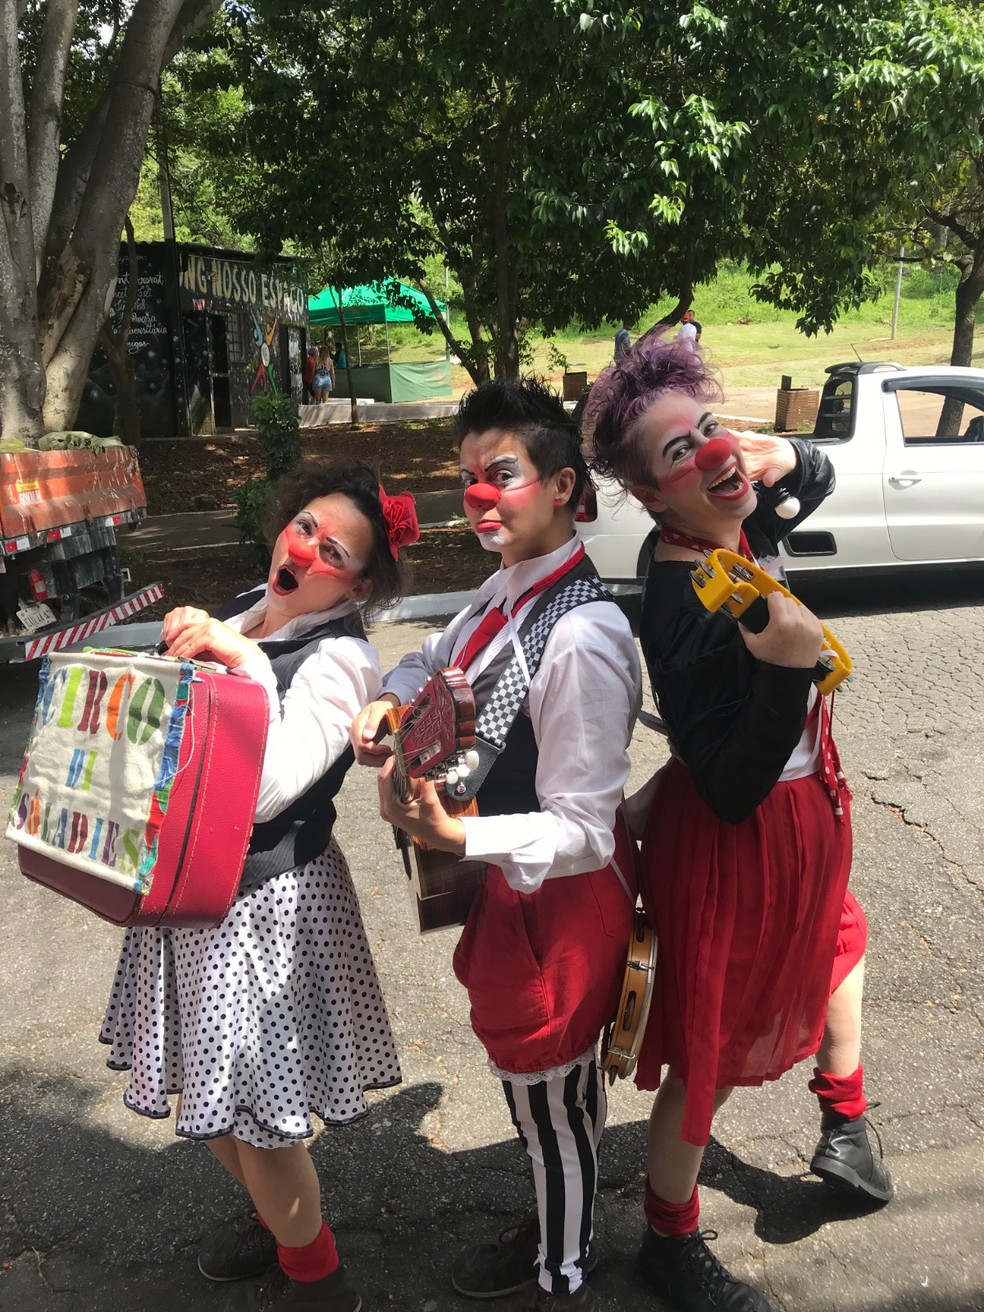 Circo infantil desconstrói pensamentos ultrapassados com música e risada neste domingo no Sesc Pompeia